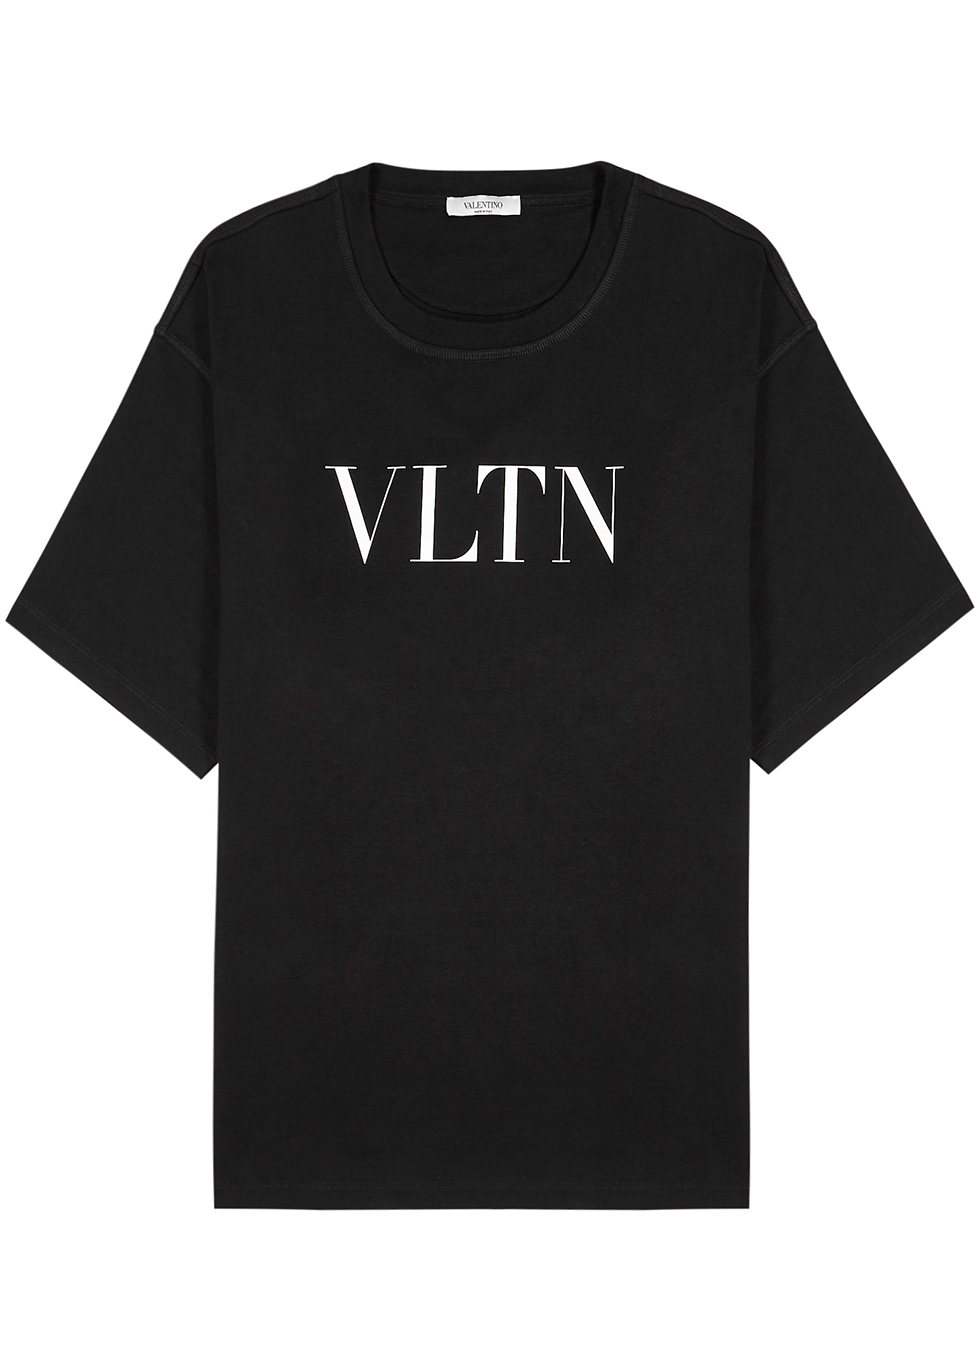 VLTN black cotton T-shirt